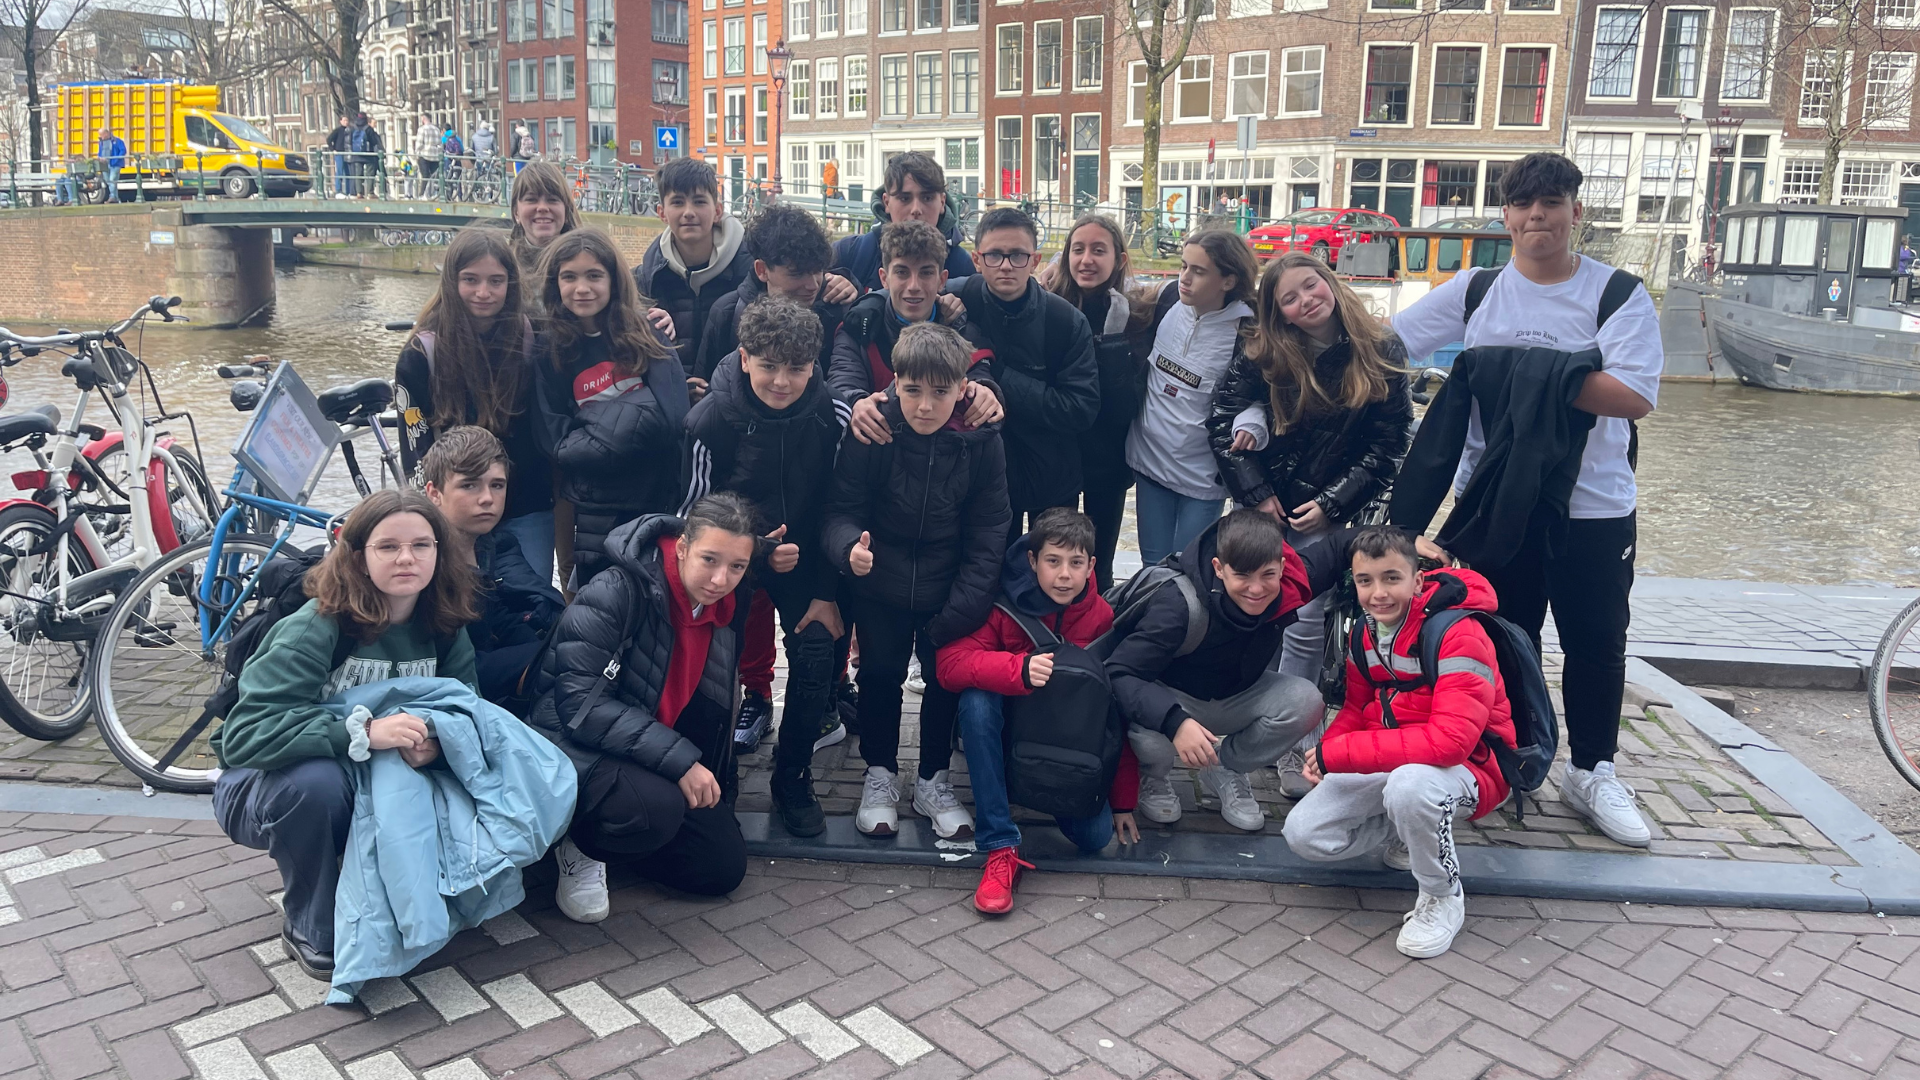 Esta semana nuestros alumnos de 2º ESO han aterrizado en Holanda para vivir una experiencia especial. Durante estos días están disfrutando de su intercambio y nos mandan esta fotografía desde Amsterdam.